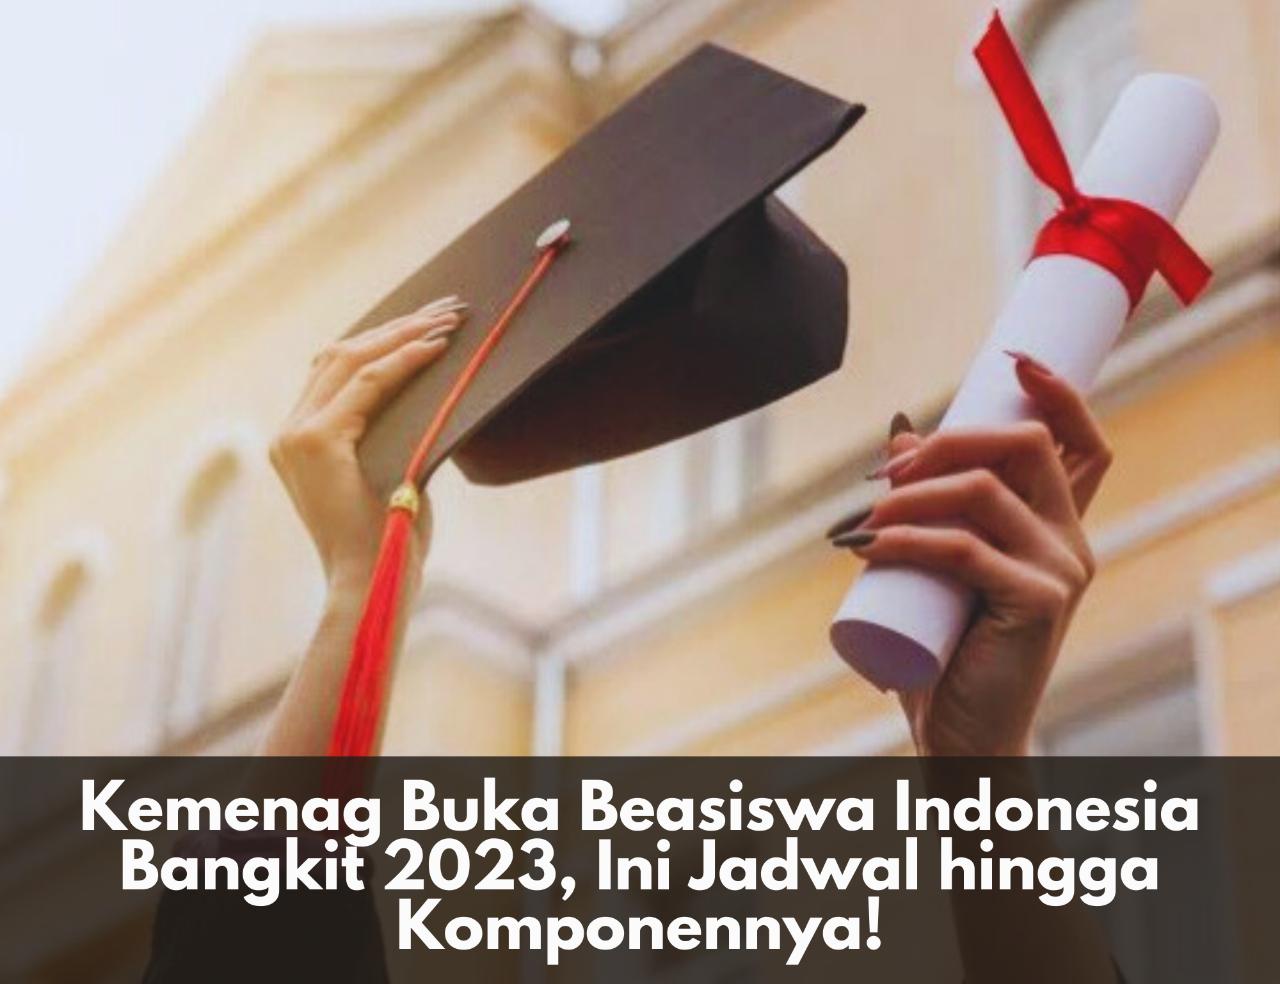 Alhamdulillah! Kemenag Buka Beasiswa Indonesia Bangkit 2023, Ini Jadwal hingga Komponennya